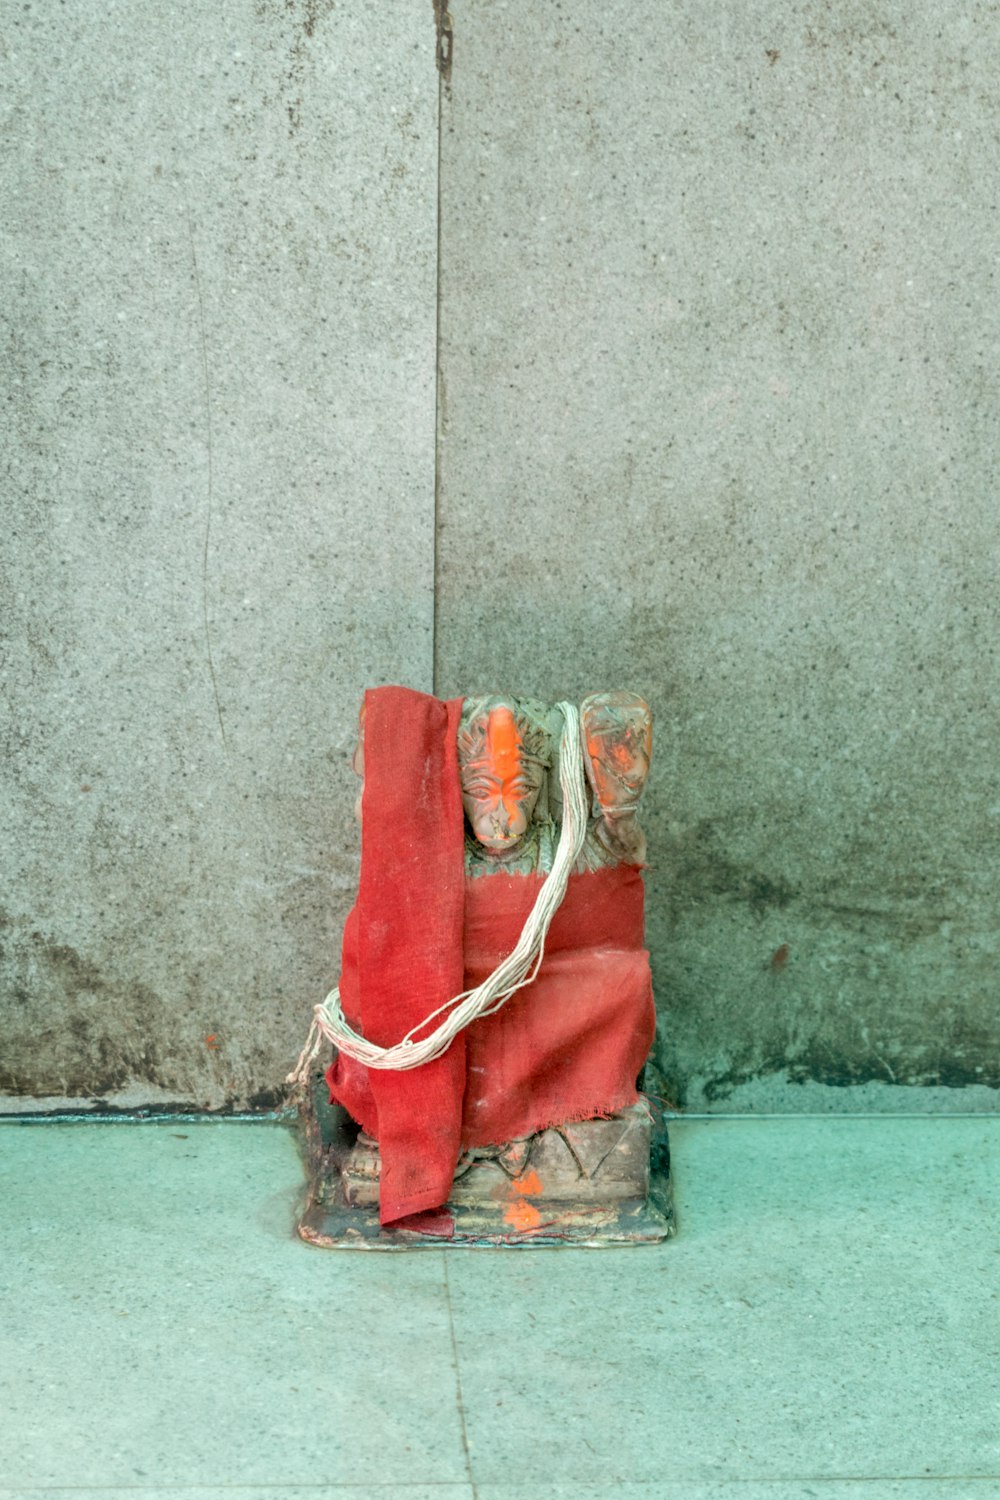 una borsa rossa seduta in cima a un muro di cemento